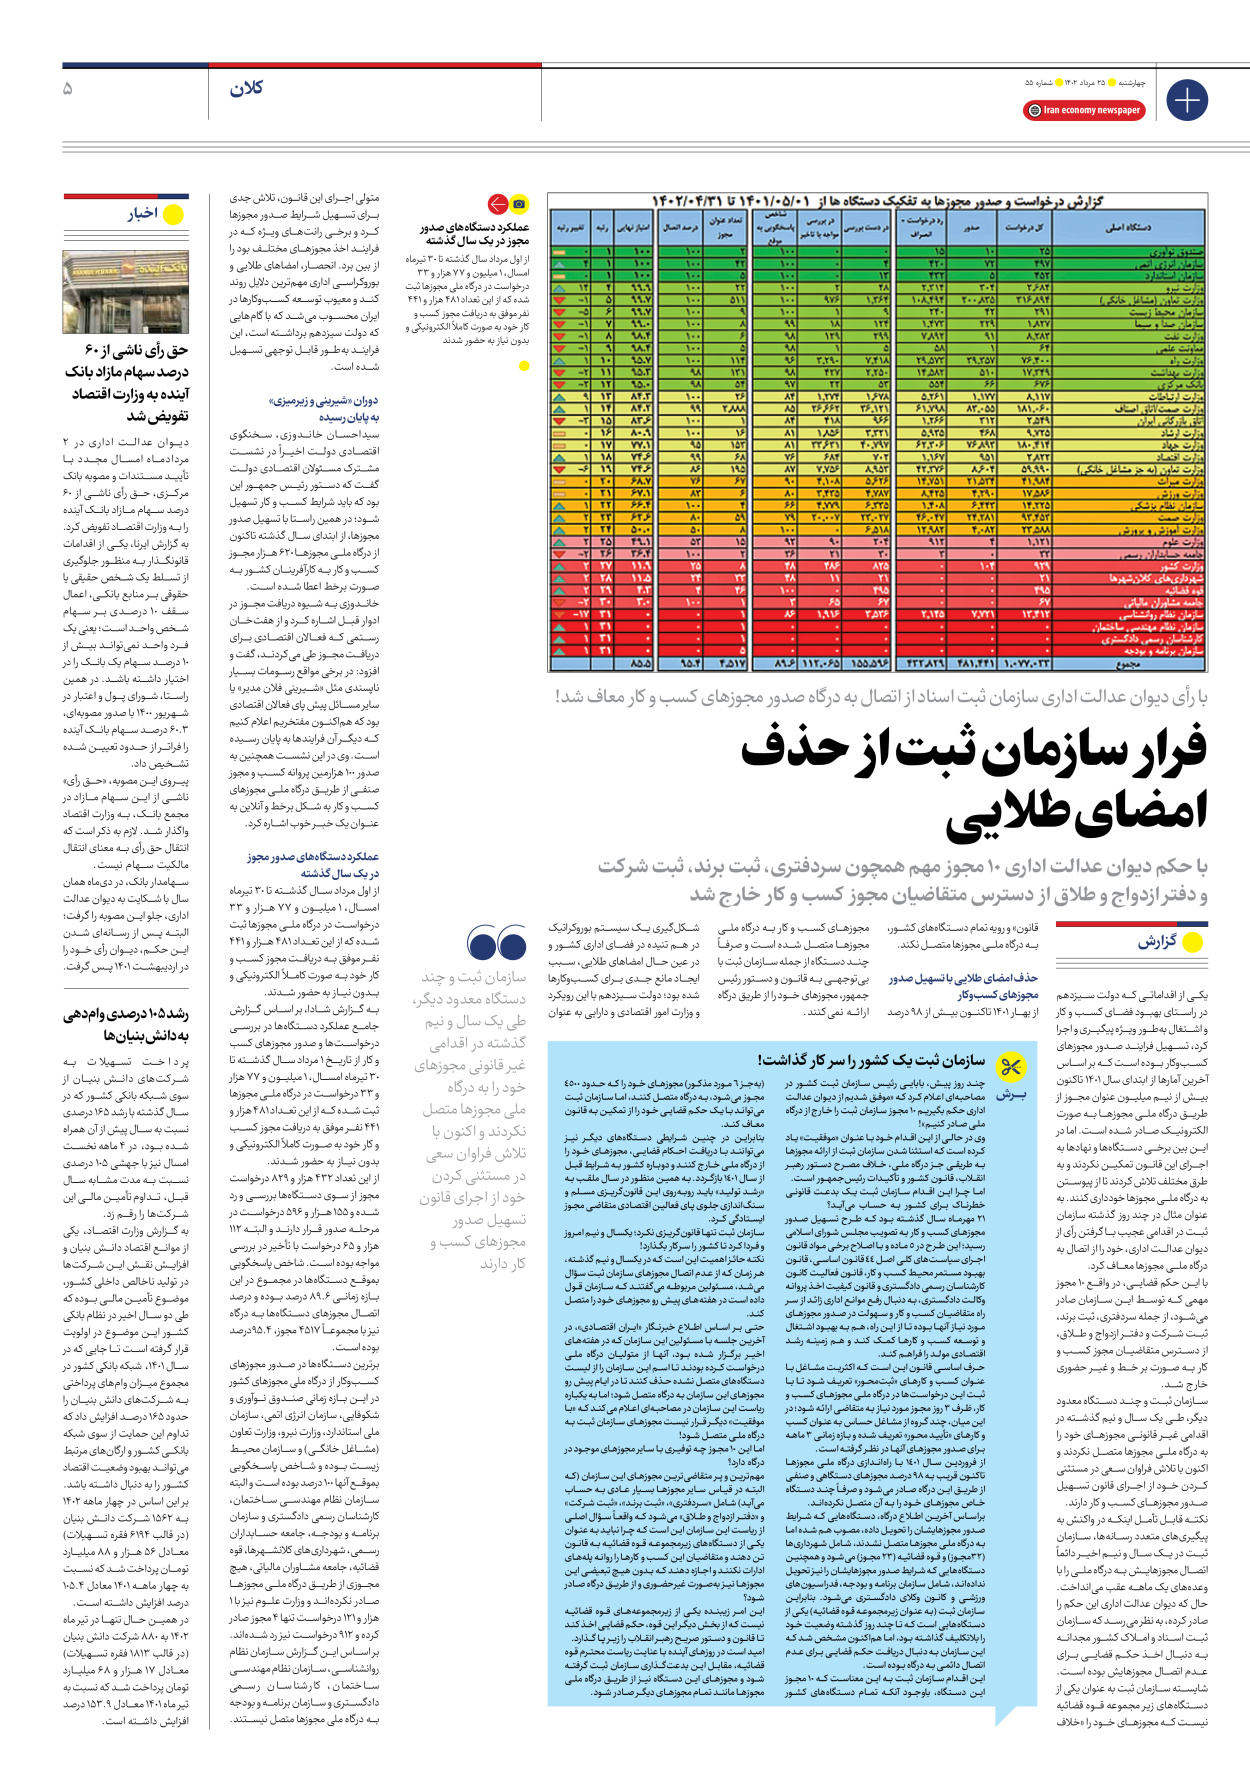 روزنامه ایران اقتصادی - شماره پنجاه و پنج - ۲۵ مرداد ۱۴۰۲ - صفحه ۵